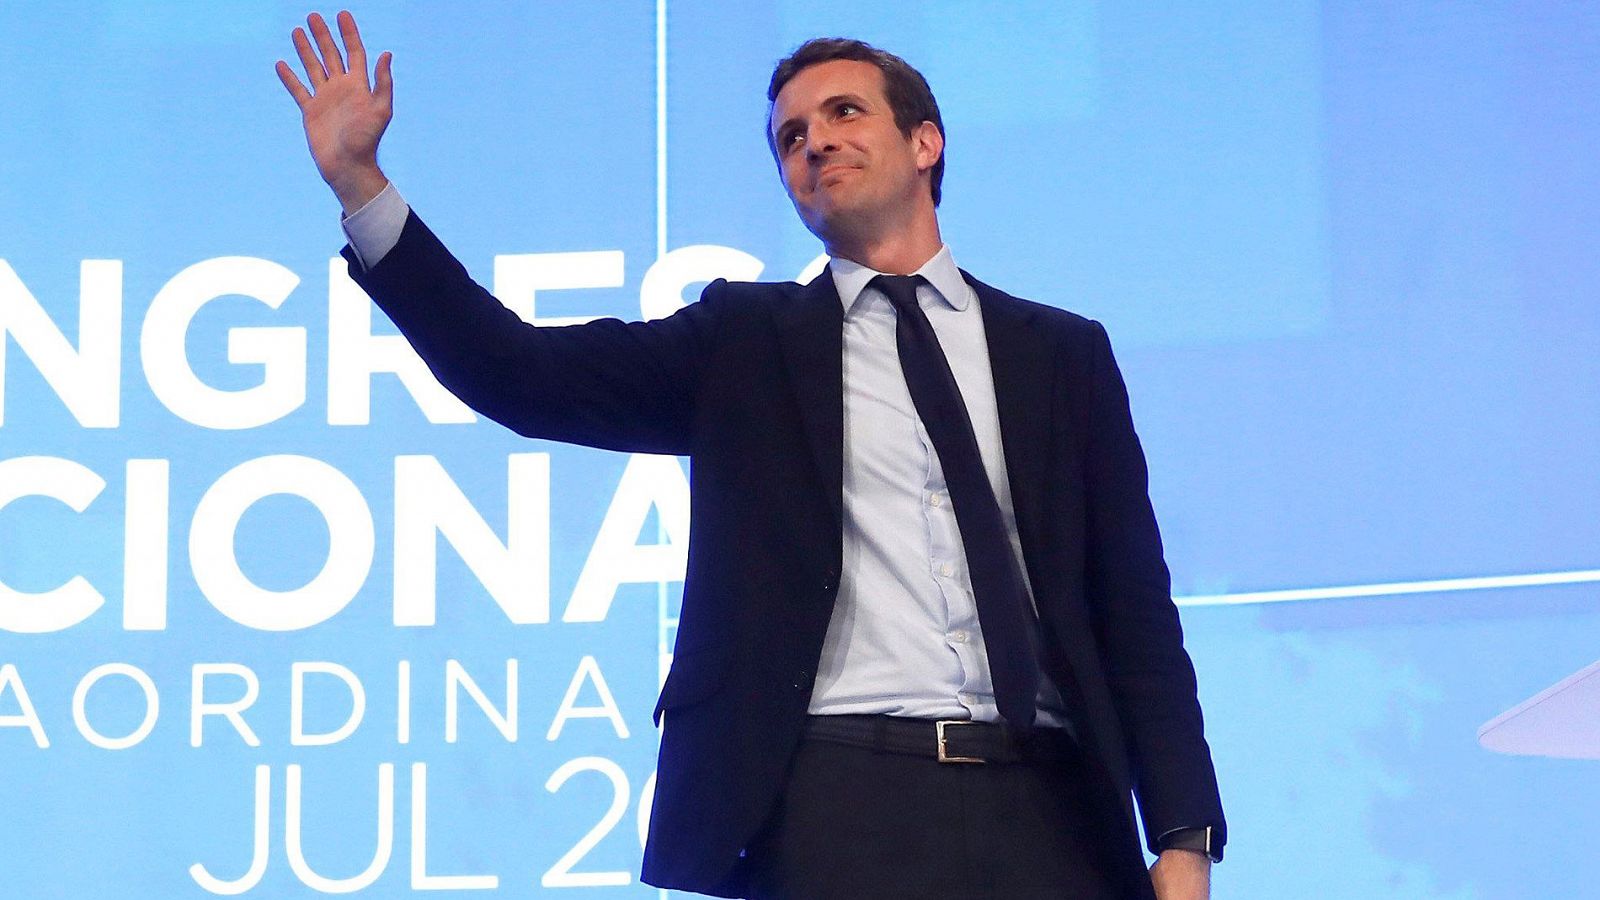 Pablo Casado, nuevo presidente del PP: "Hoy nadie ha perdido, solo ha ganado el Partido Popular"